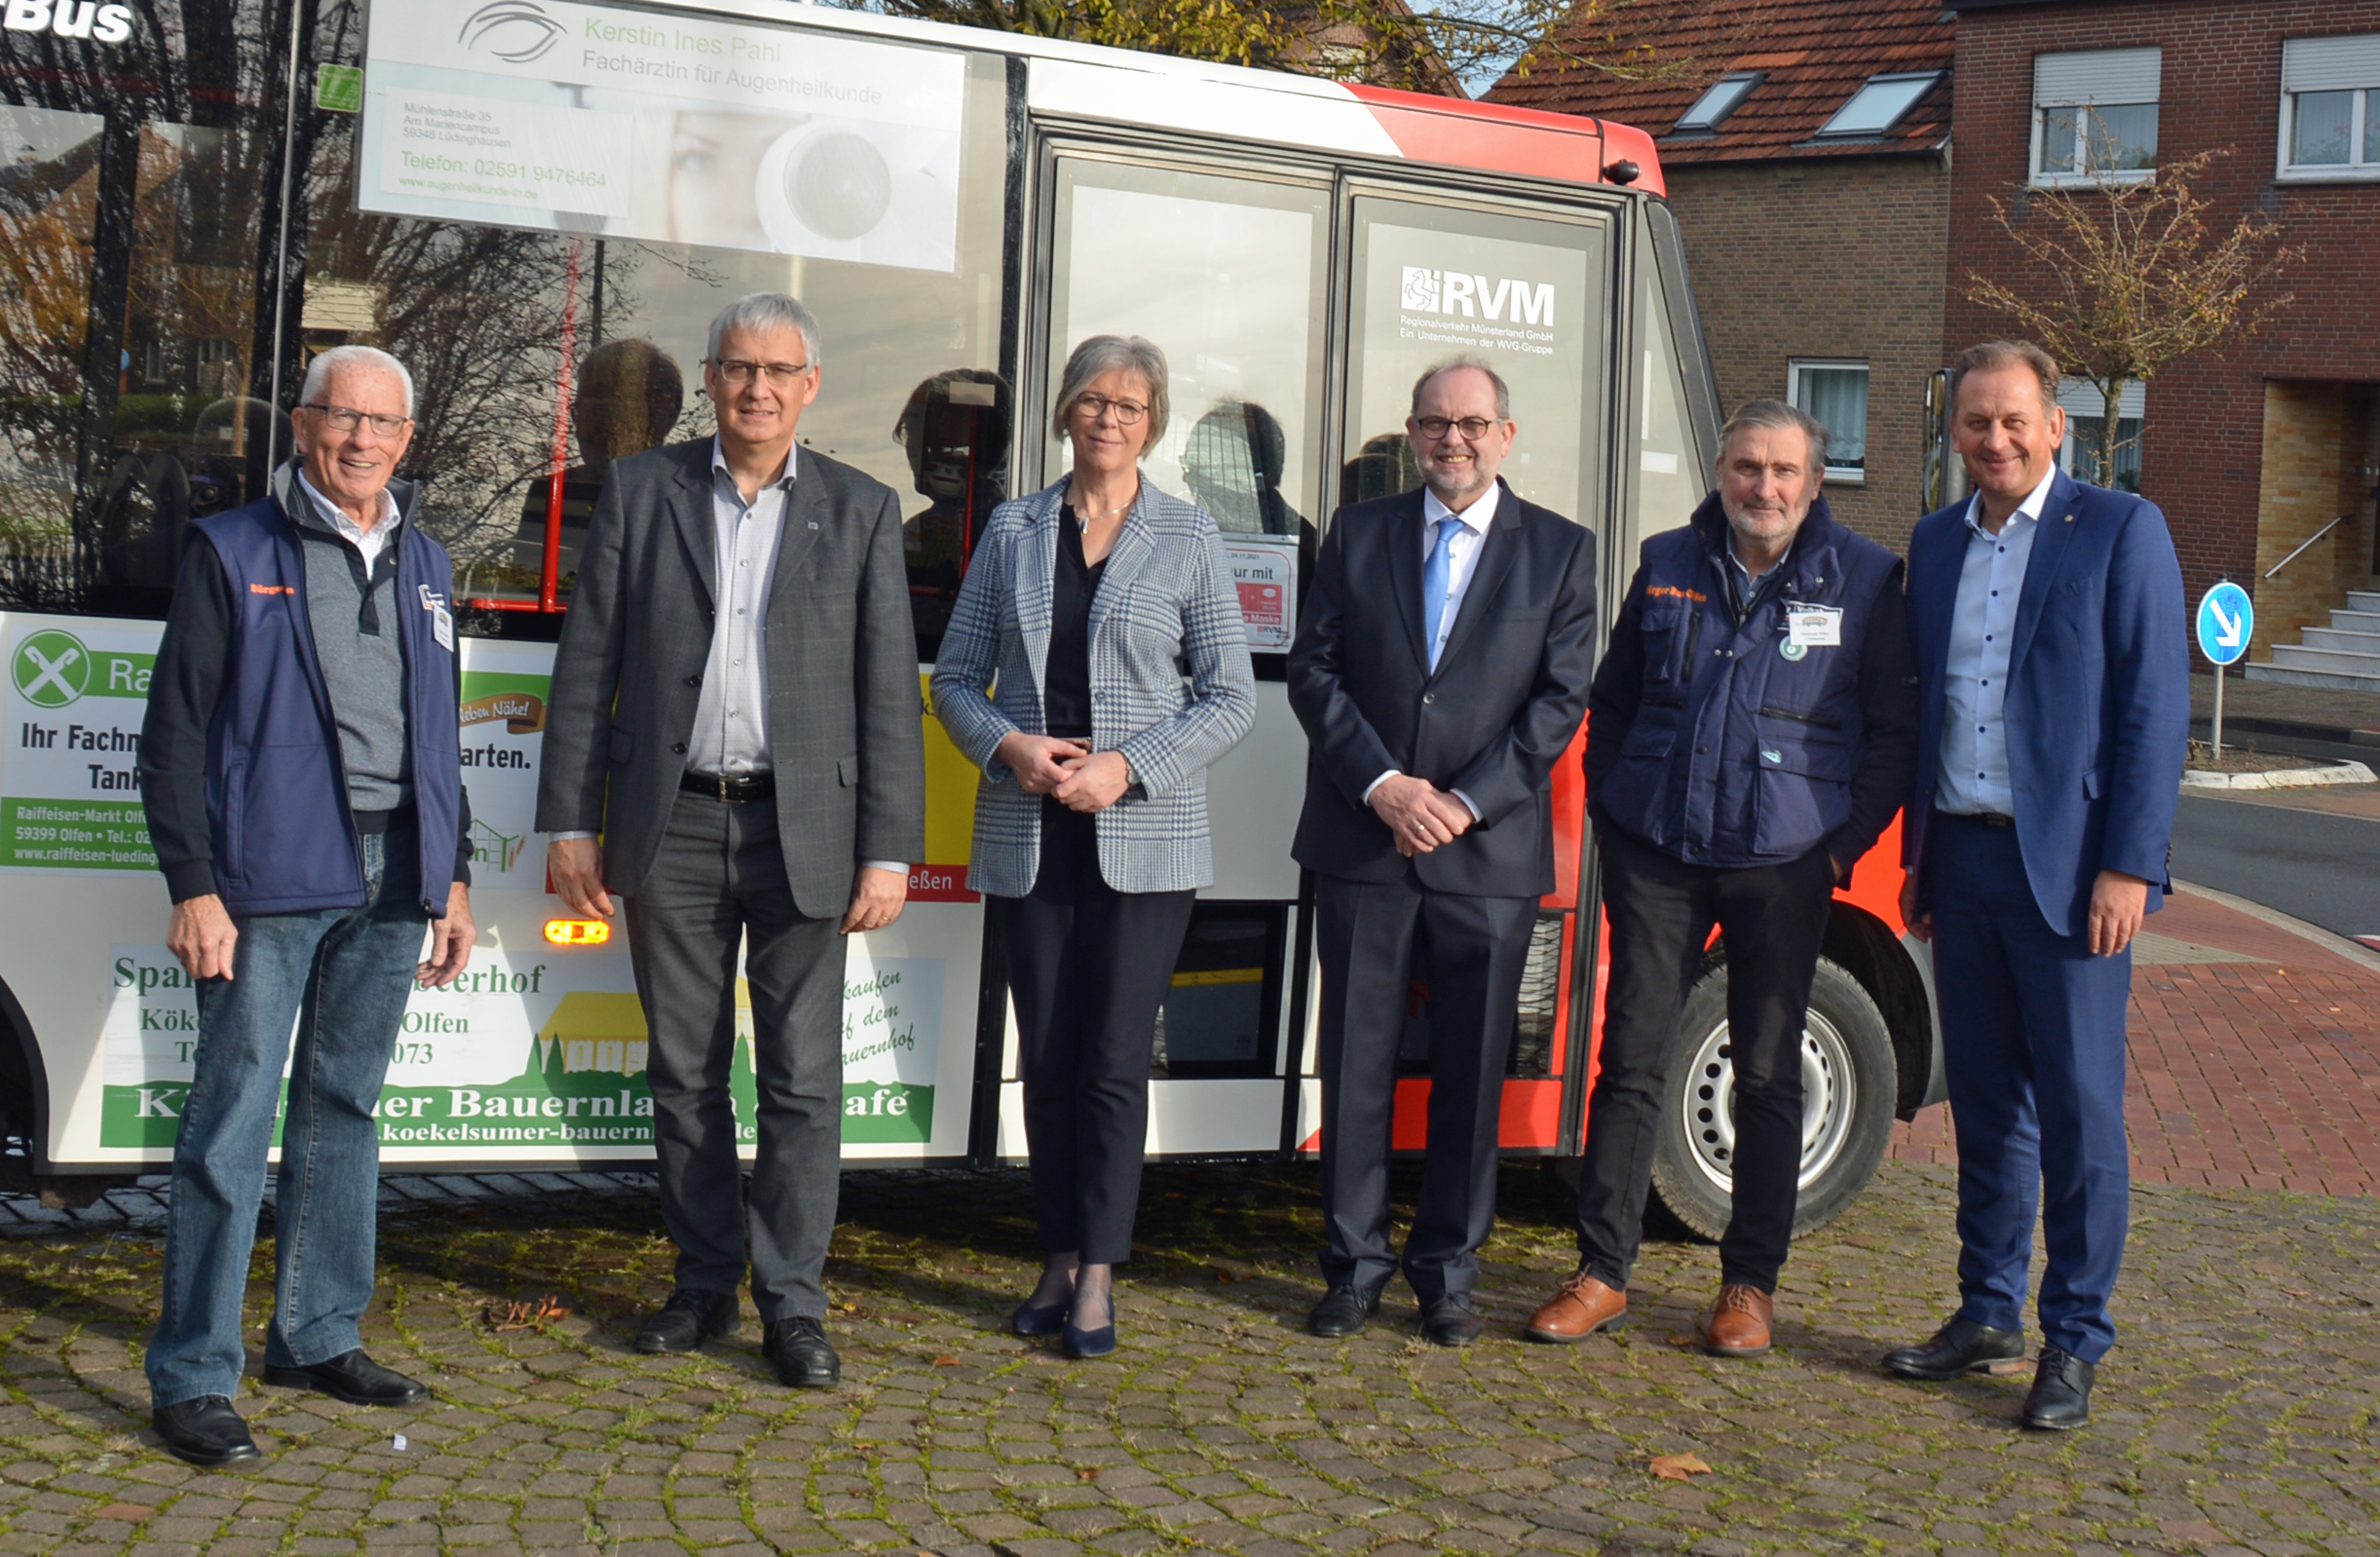 25 Jahre Bürgerbus in Olfen | Bürgerbus-Verein Olfen